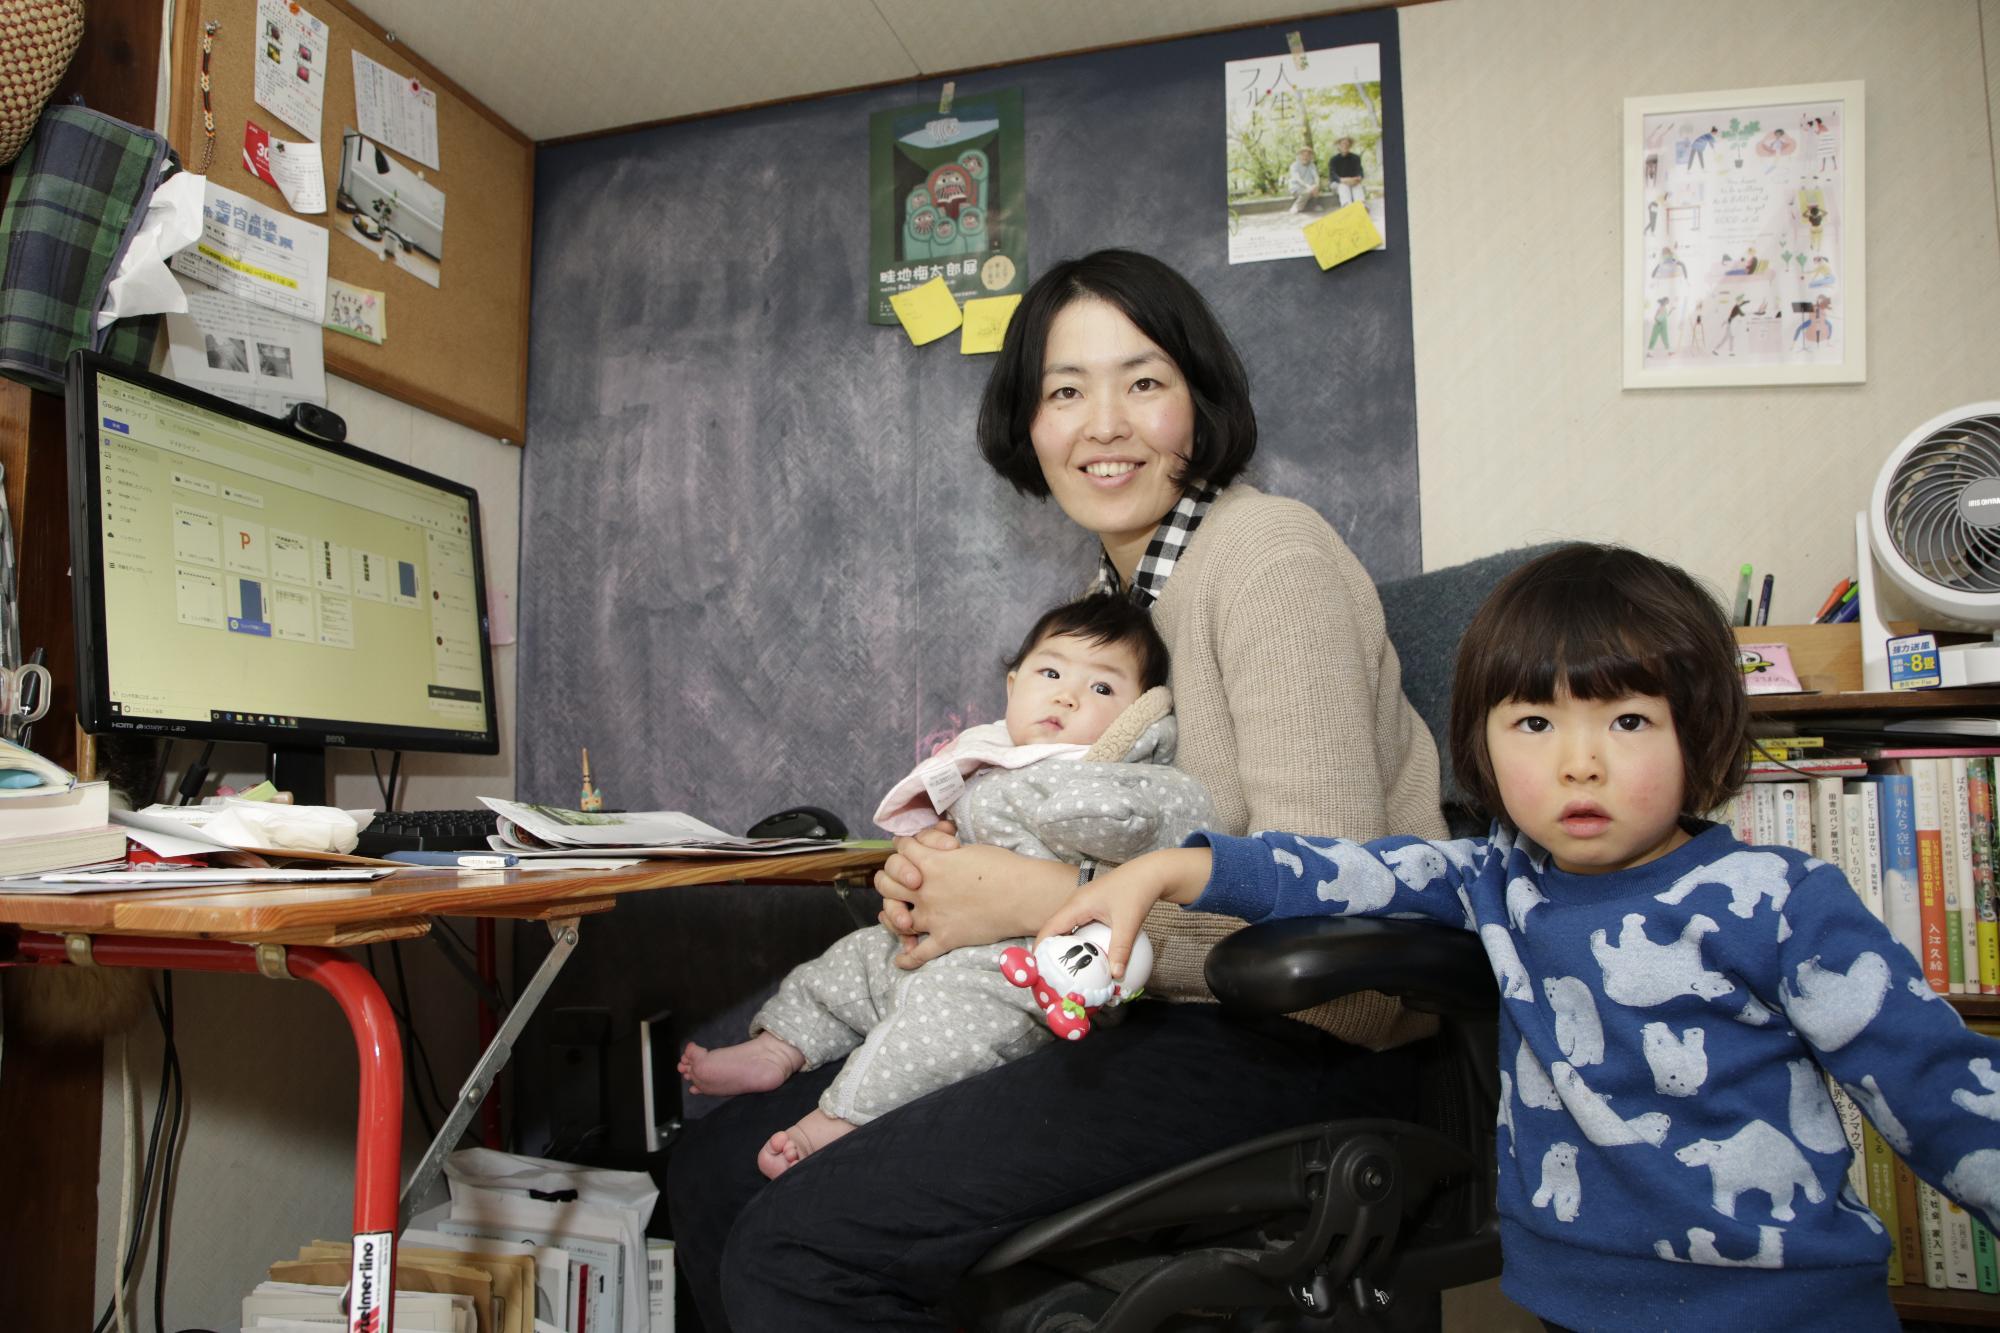 加藤さんと二人の子どもの写真